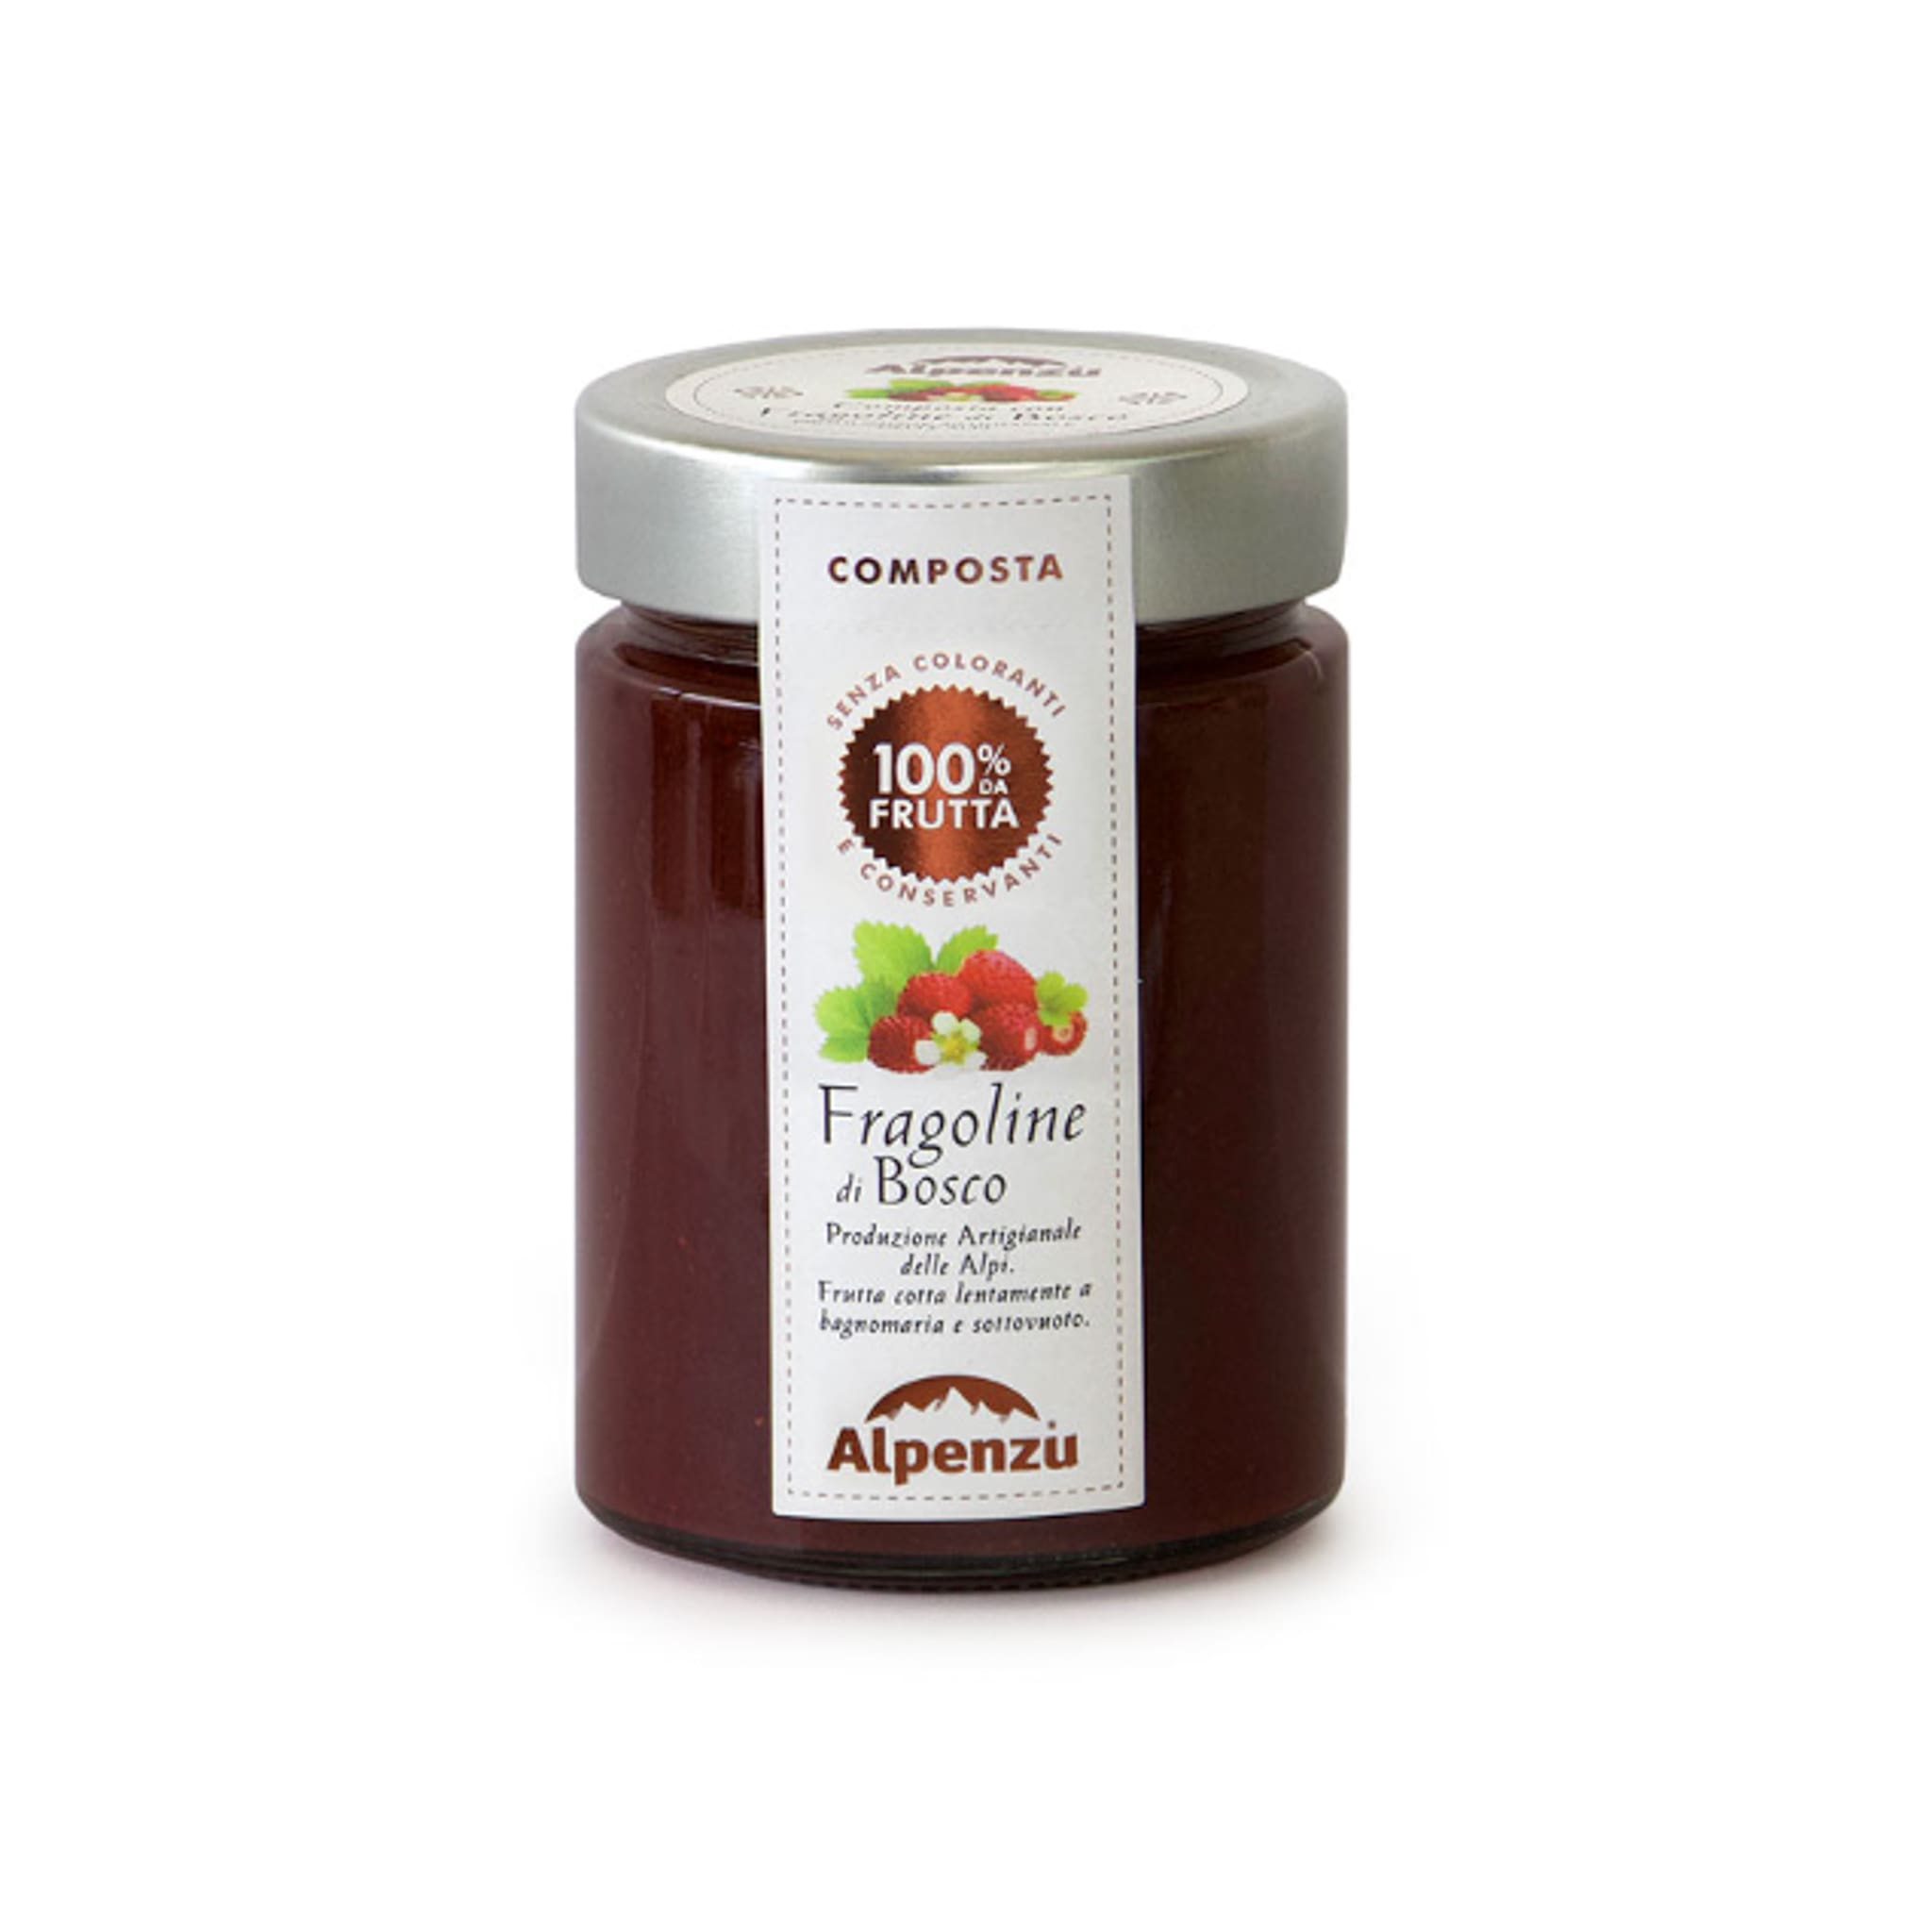 Alpenzu Fruit Preserves Wild Strawberries 100% Fruit Jam 350g